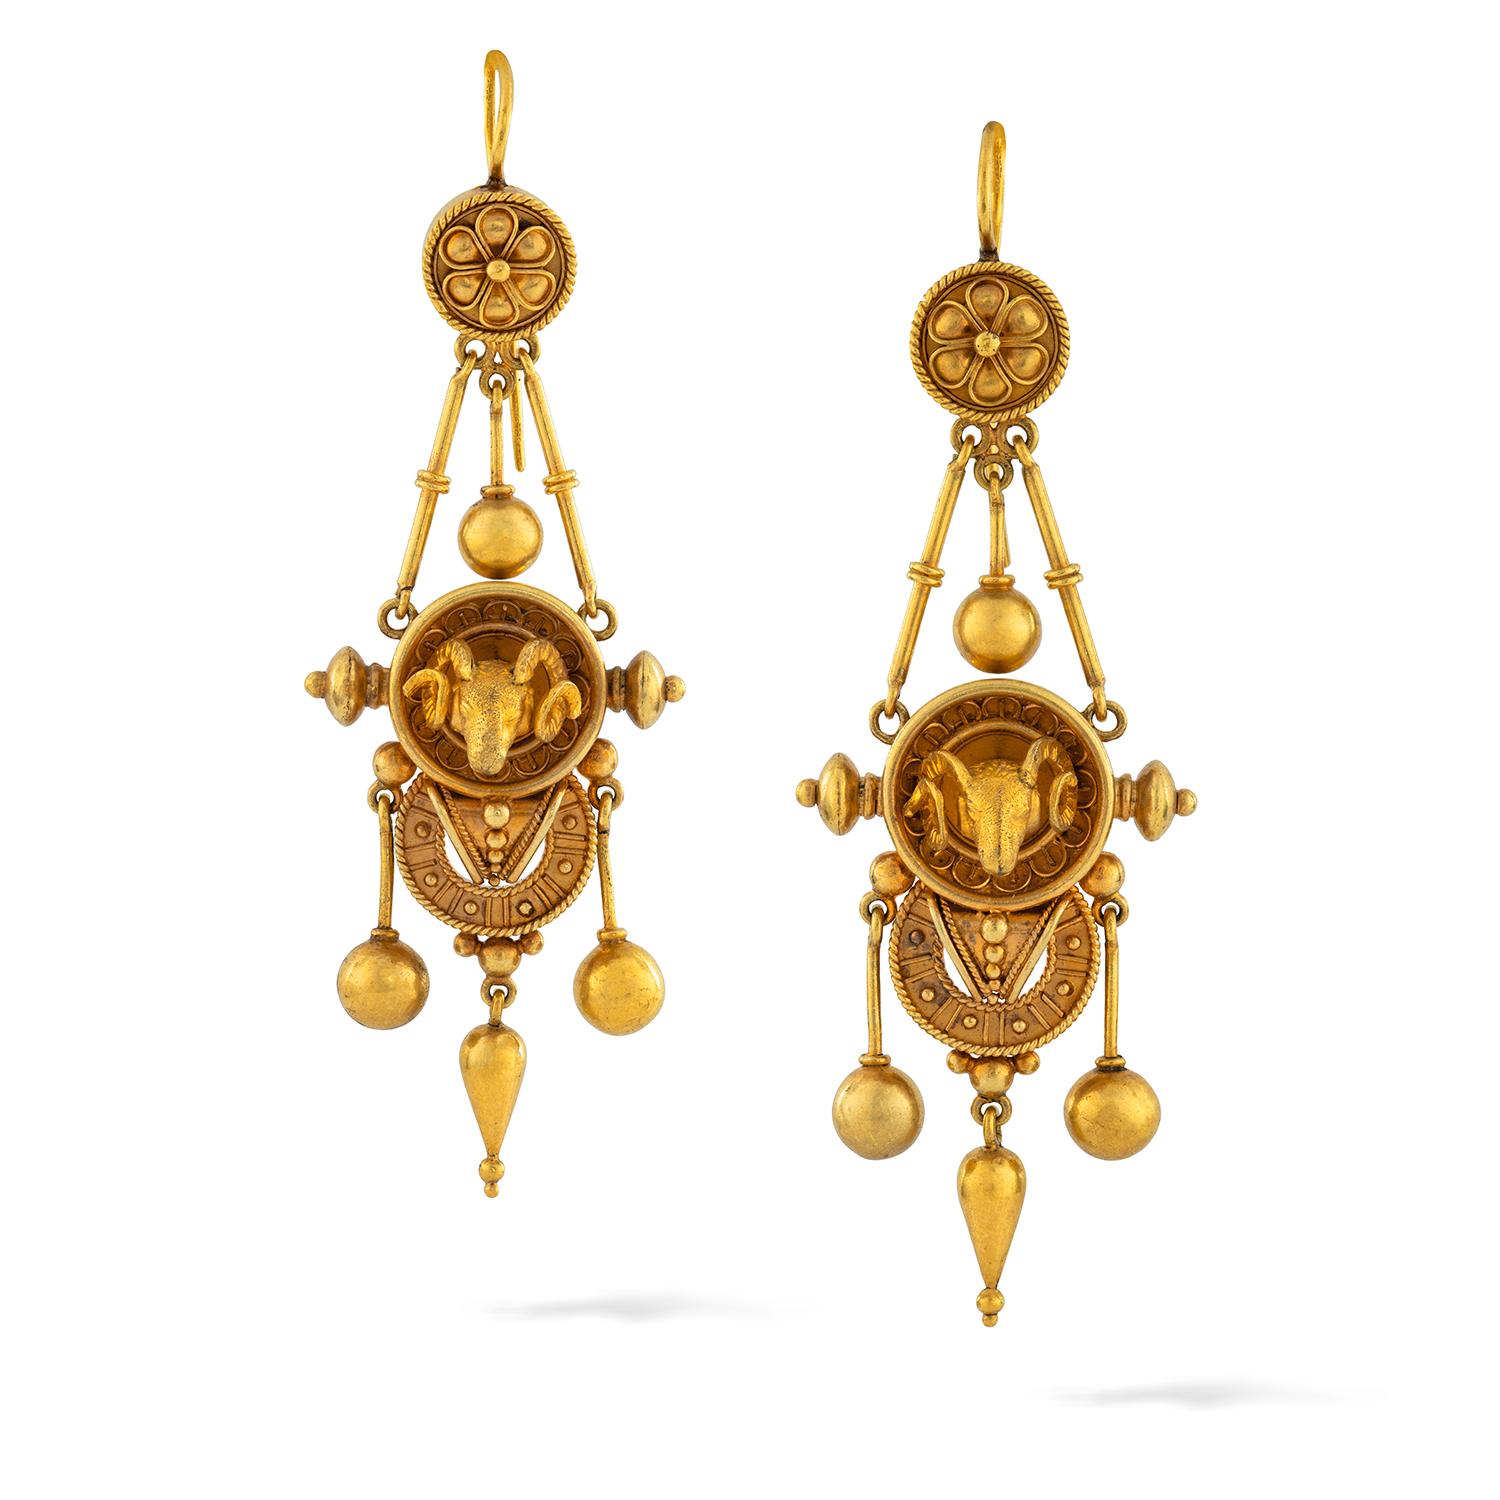 Eine goldene Etruscan Revival Suite mit Widderkopf Dekorationen, bestehend aus einem Armband, ein Paar Ohrringe und ein Anhänger, das Armband mit einem realistisch geschnitzten Widderkopf von etruskischen Stil Draht und Perlenarbeit Dekorationen